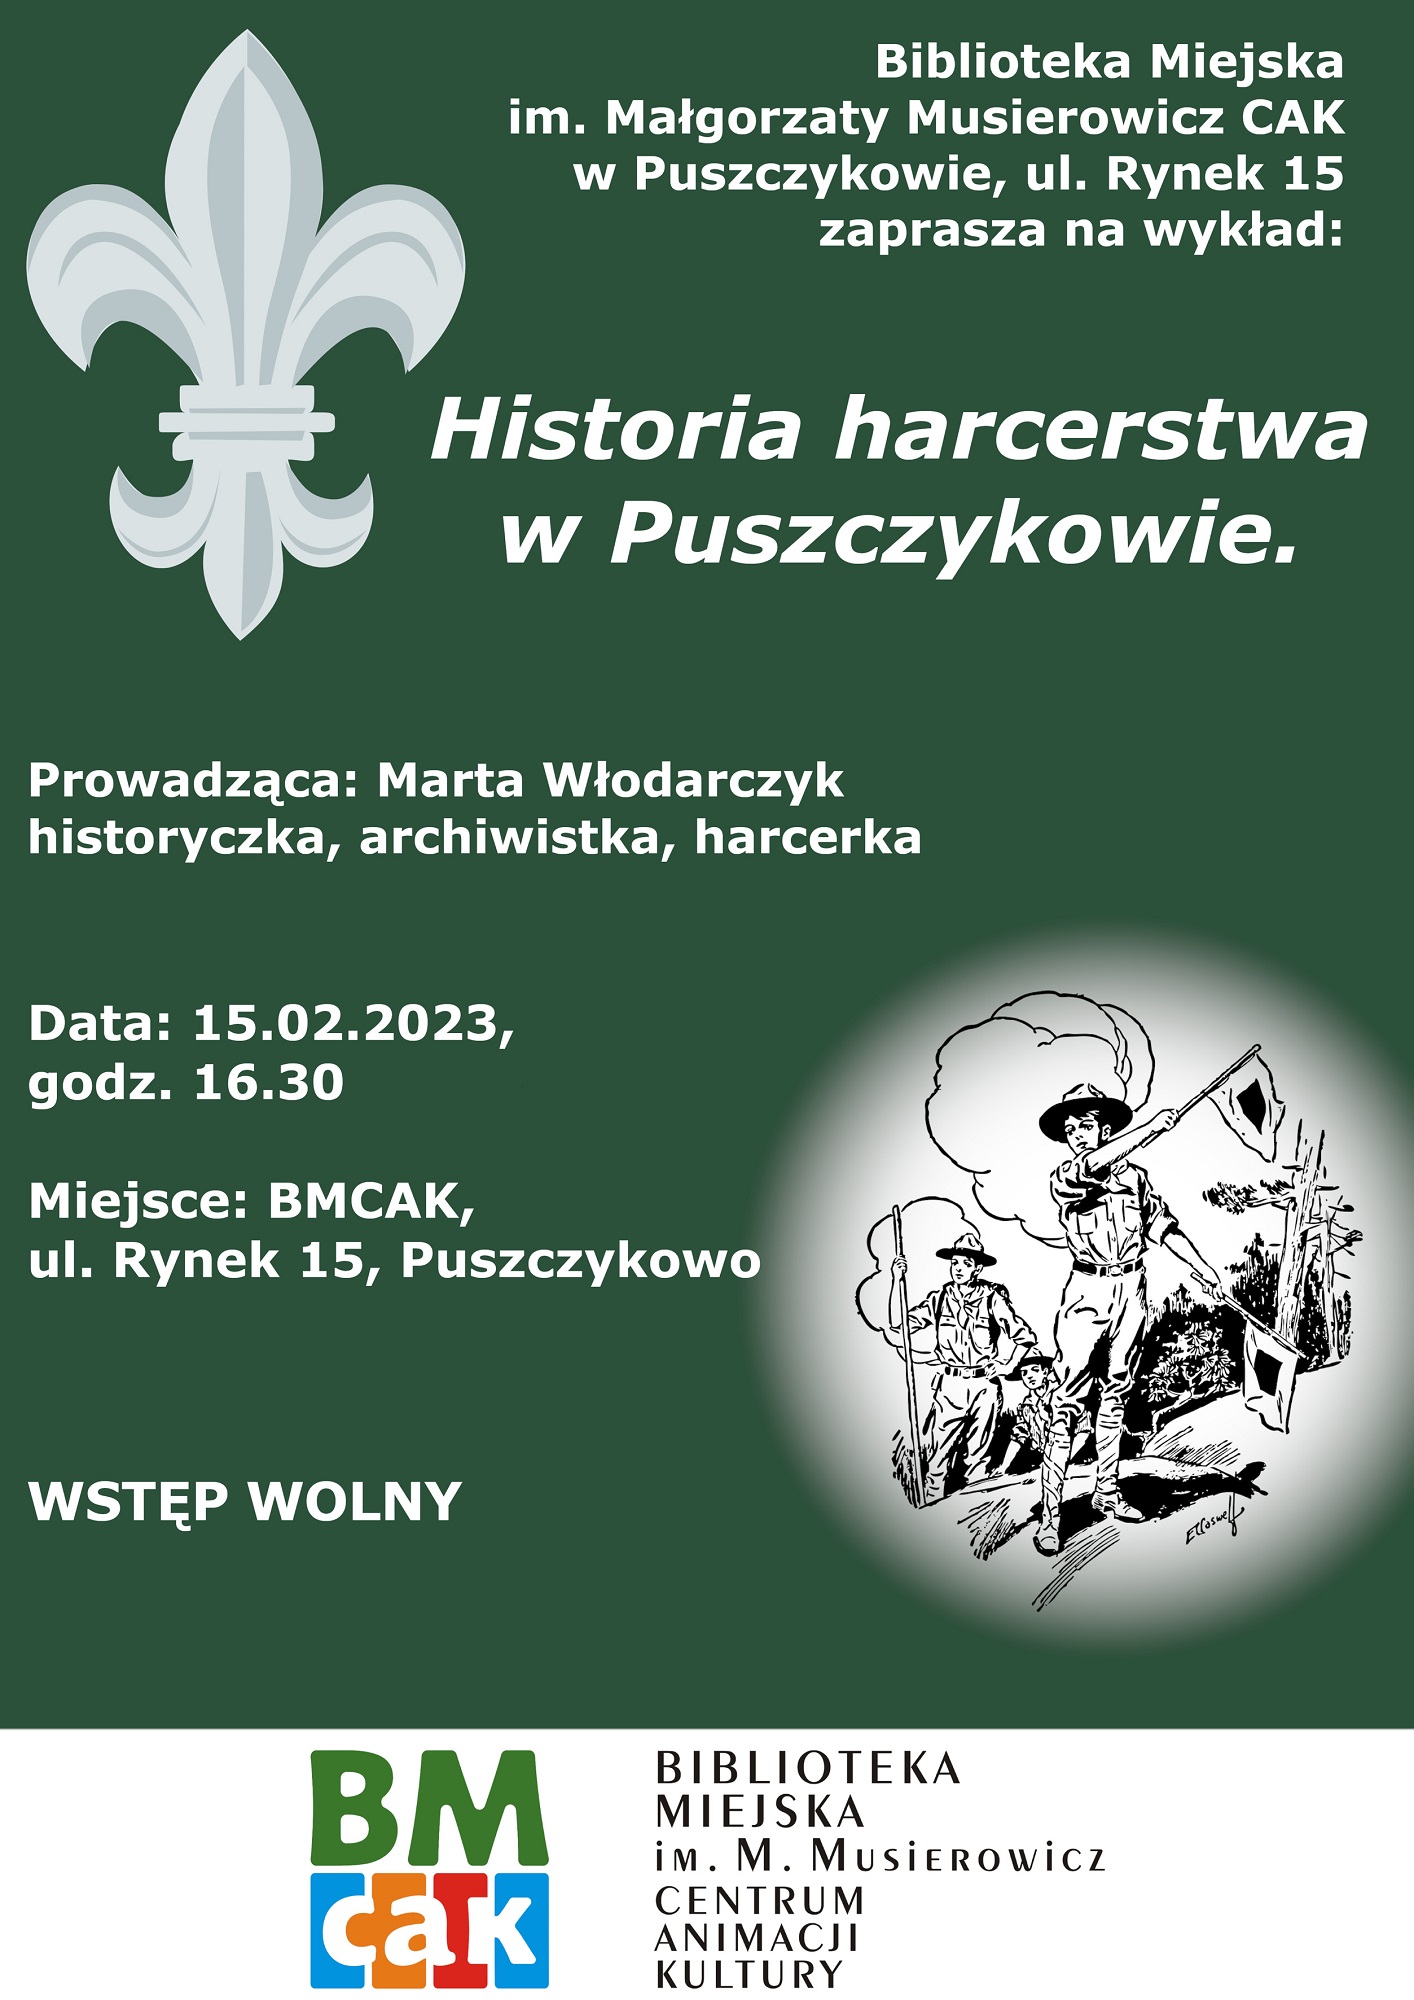 Biblioteka Miejska w Puszczykowie zaprasza na wykład o historii harcerstwa w Puszczykowie.